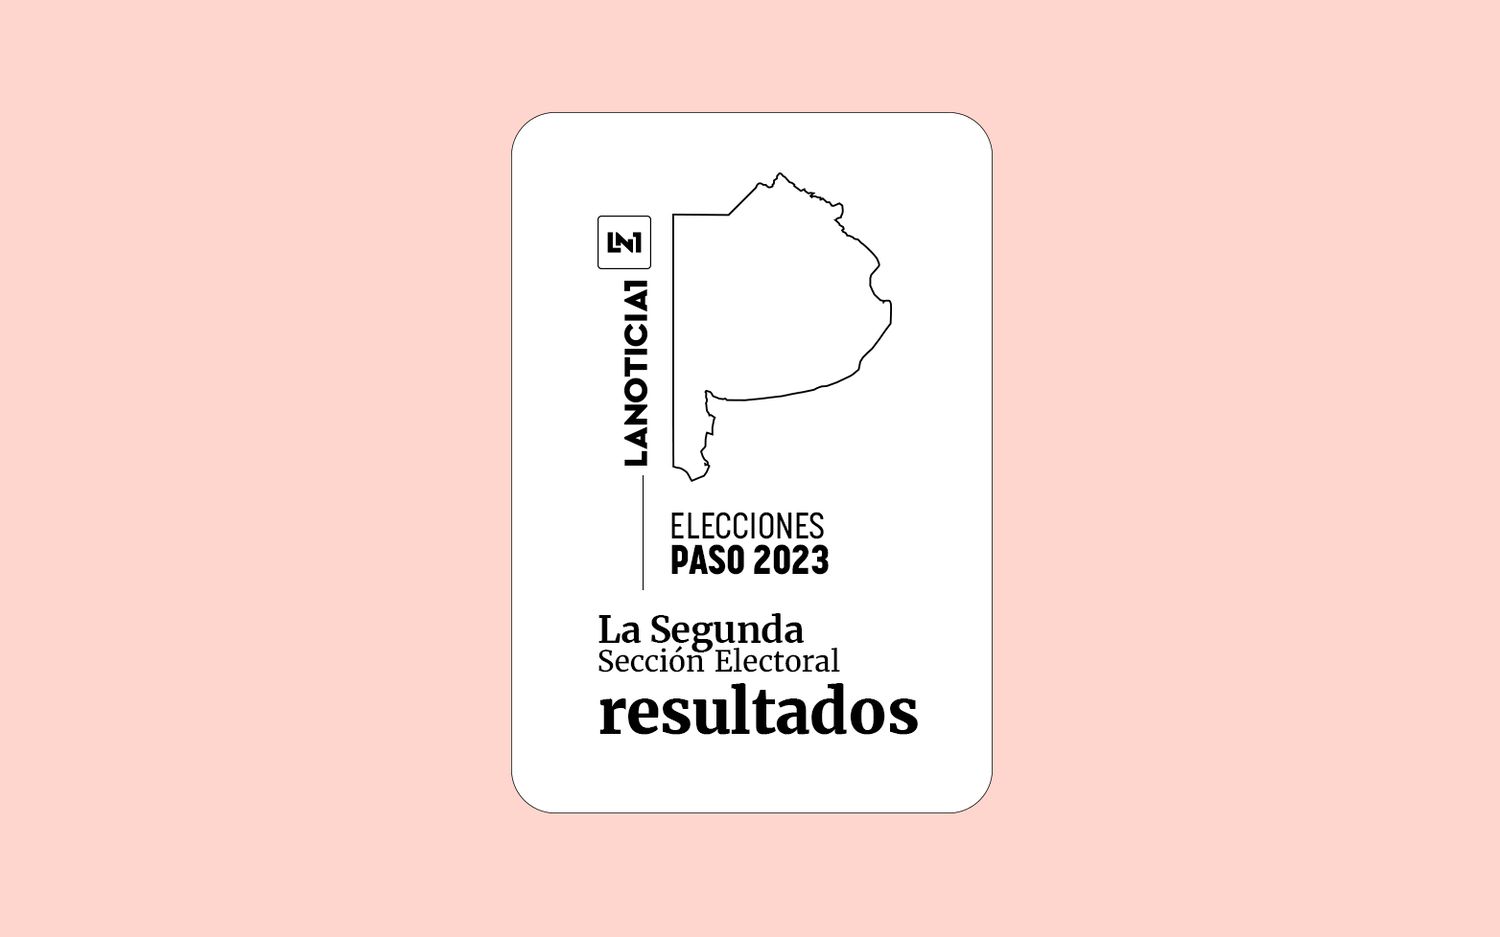 Elecciones PASO 2023: Resultados oficiales en la Segunda Sección Electoral